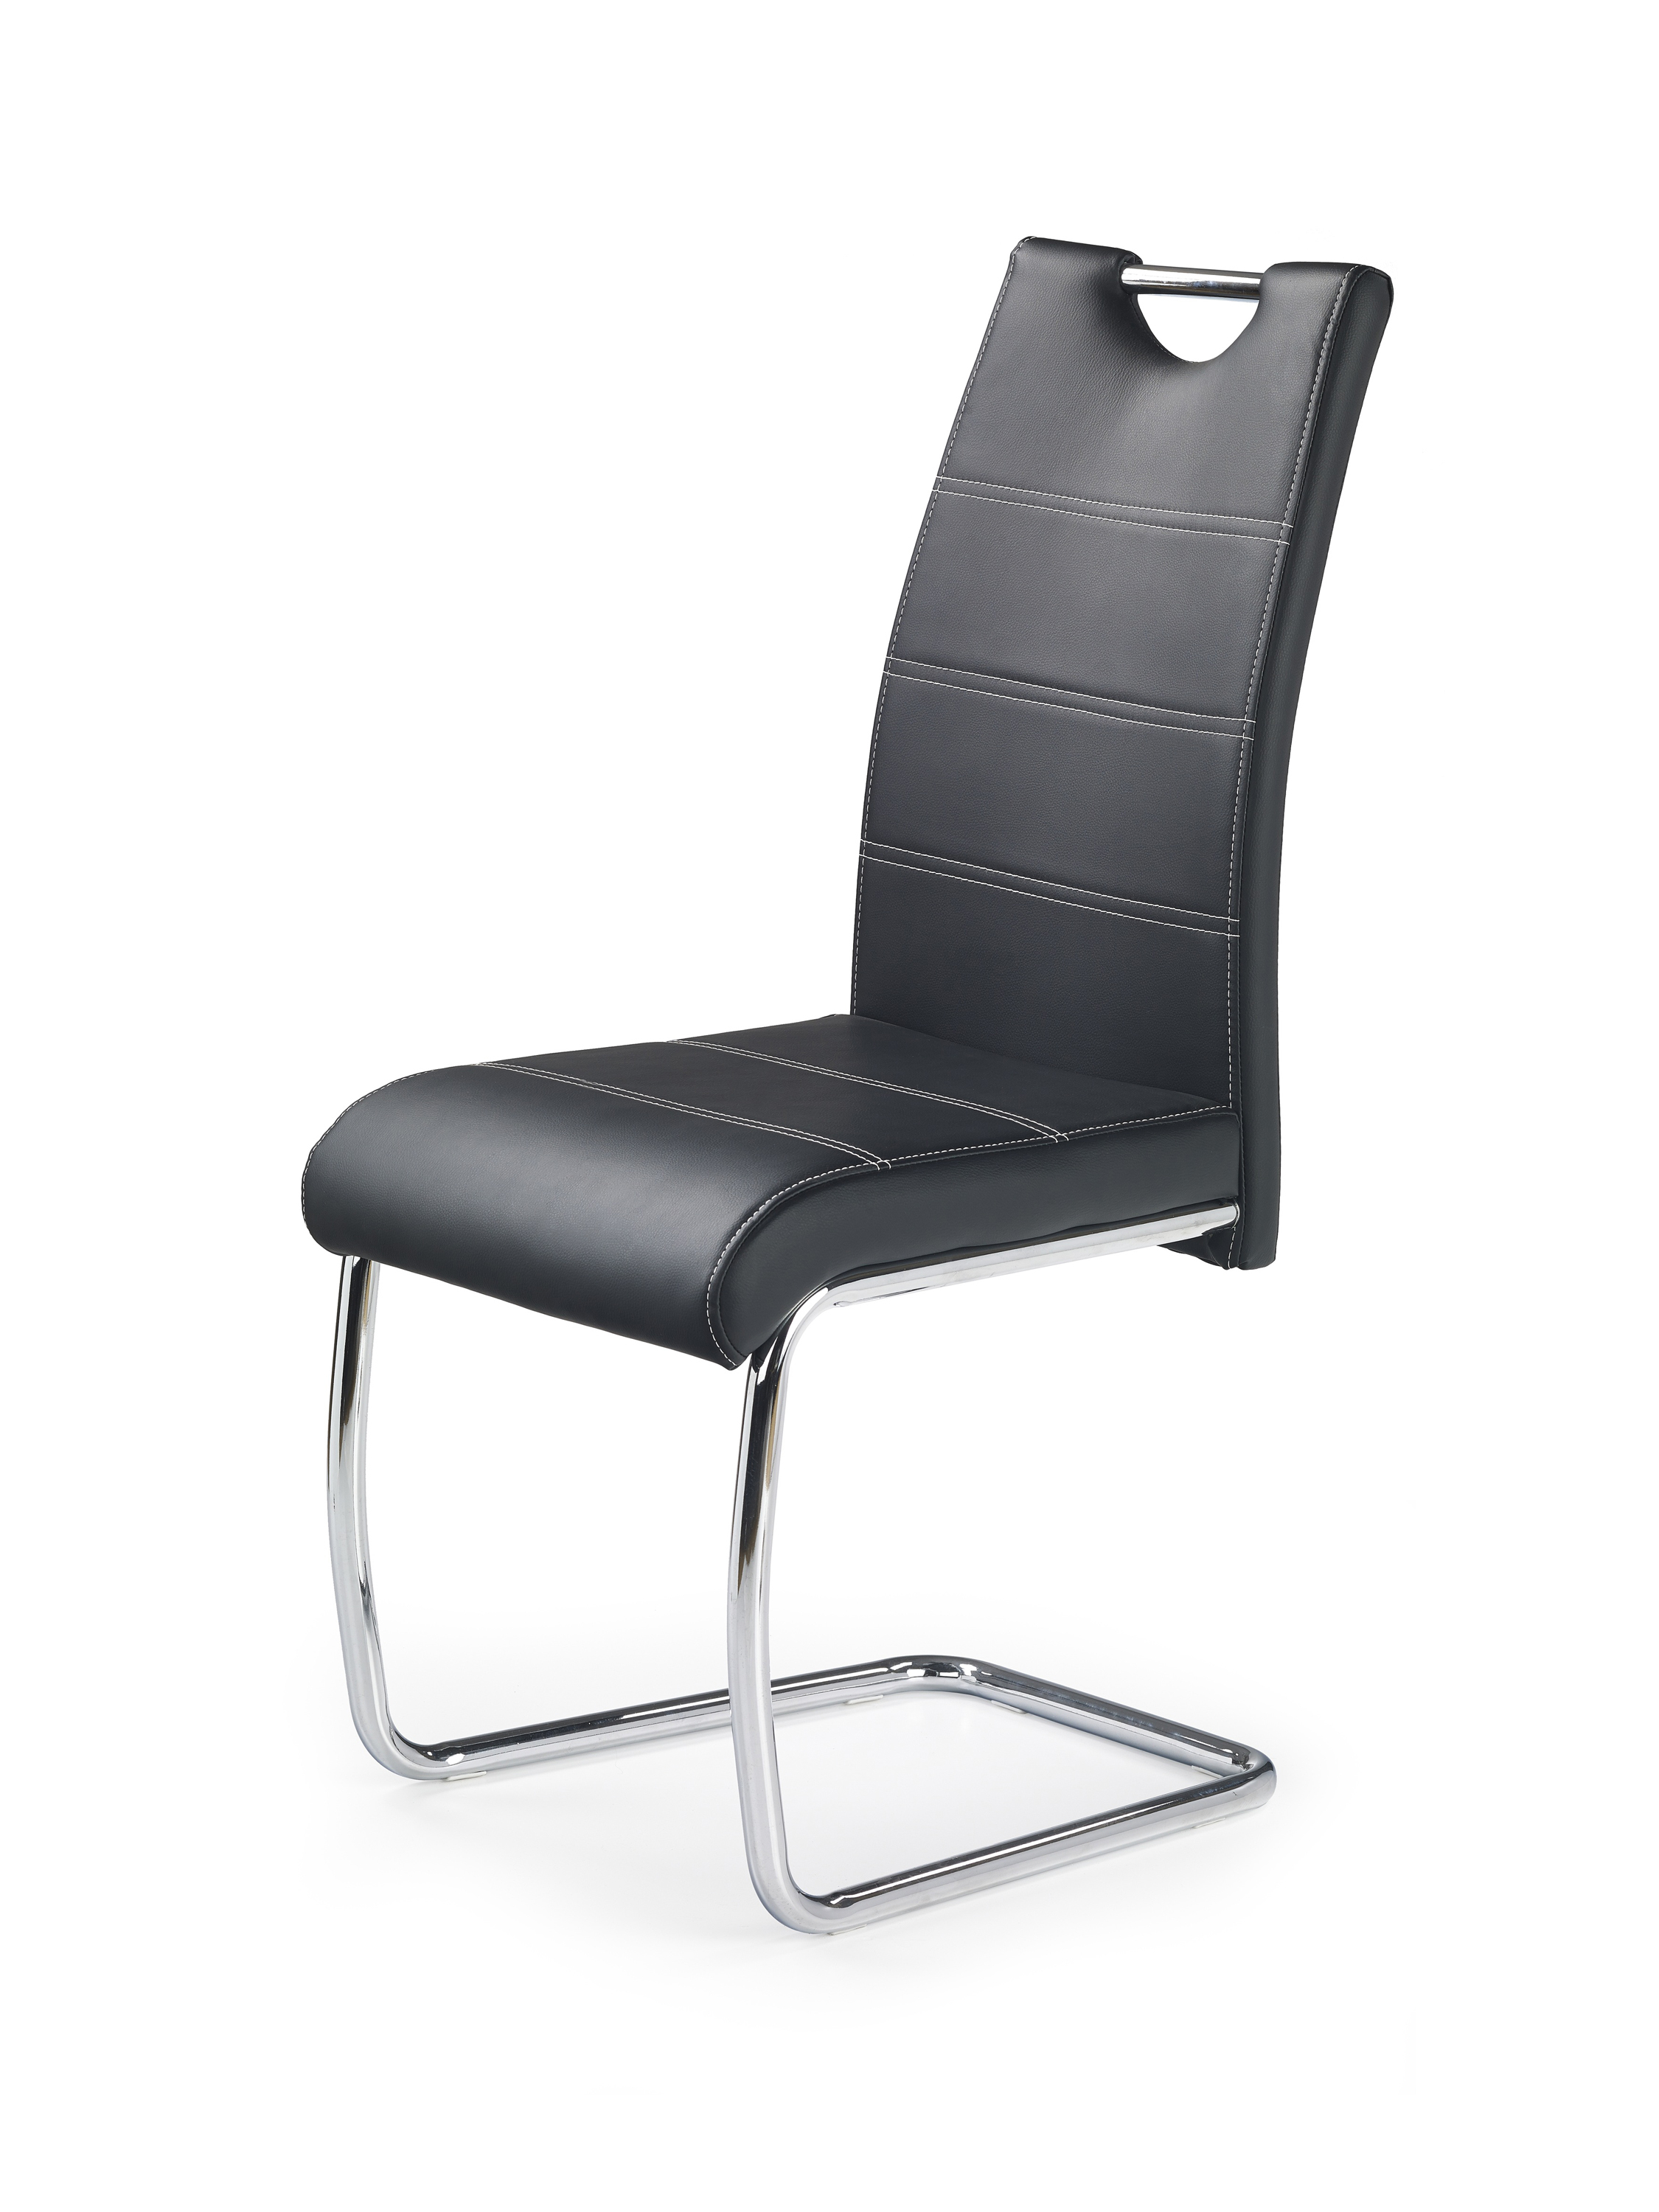 K211 krzesło czarny (2p=4szt)